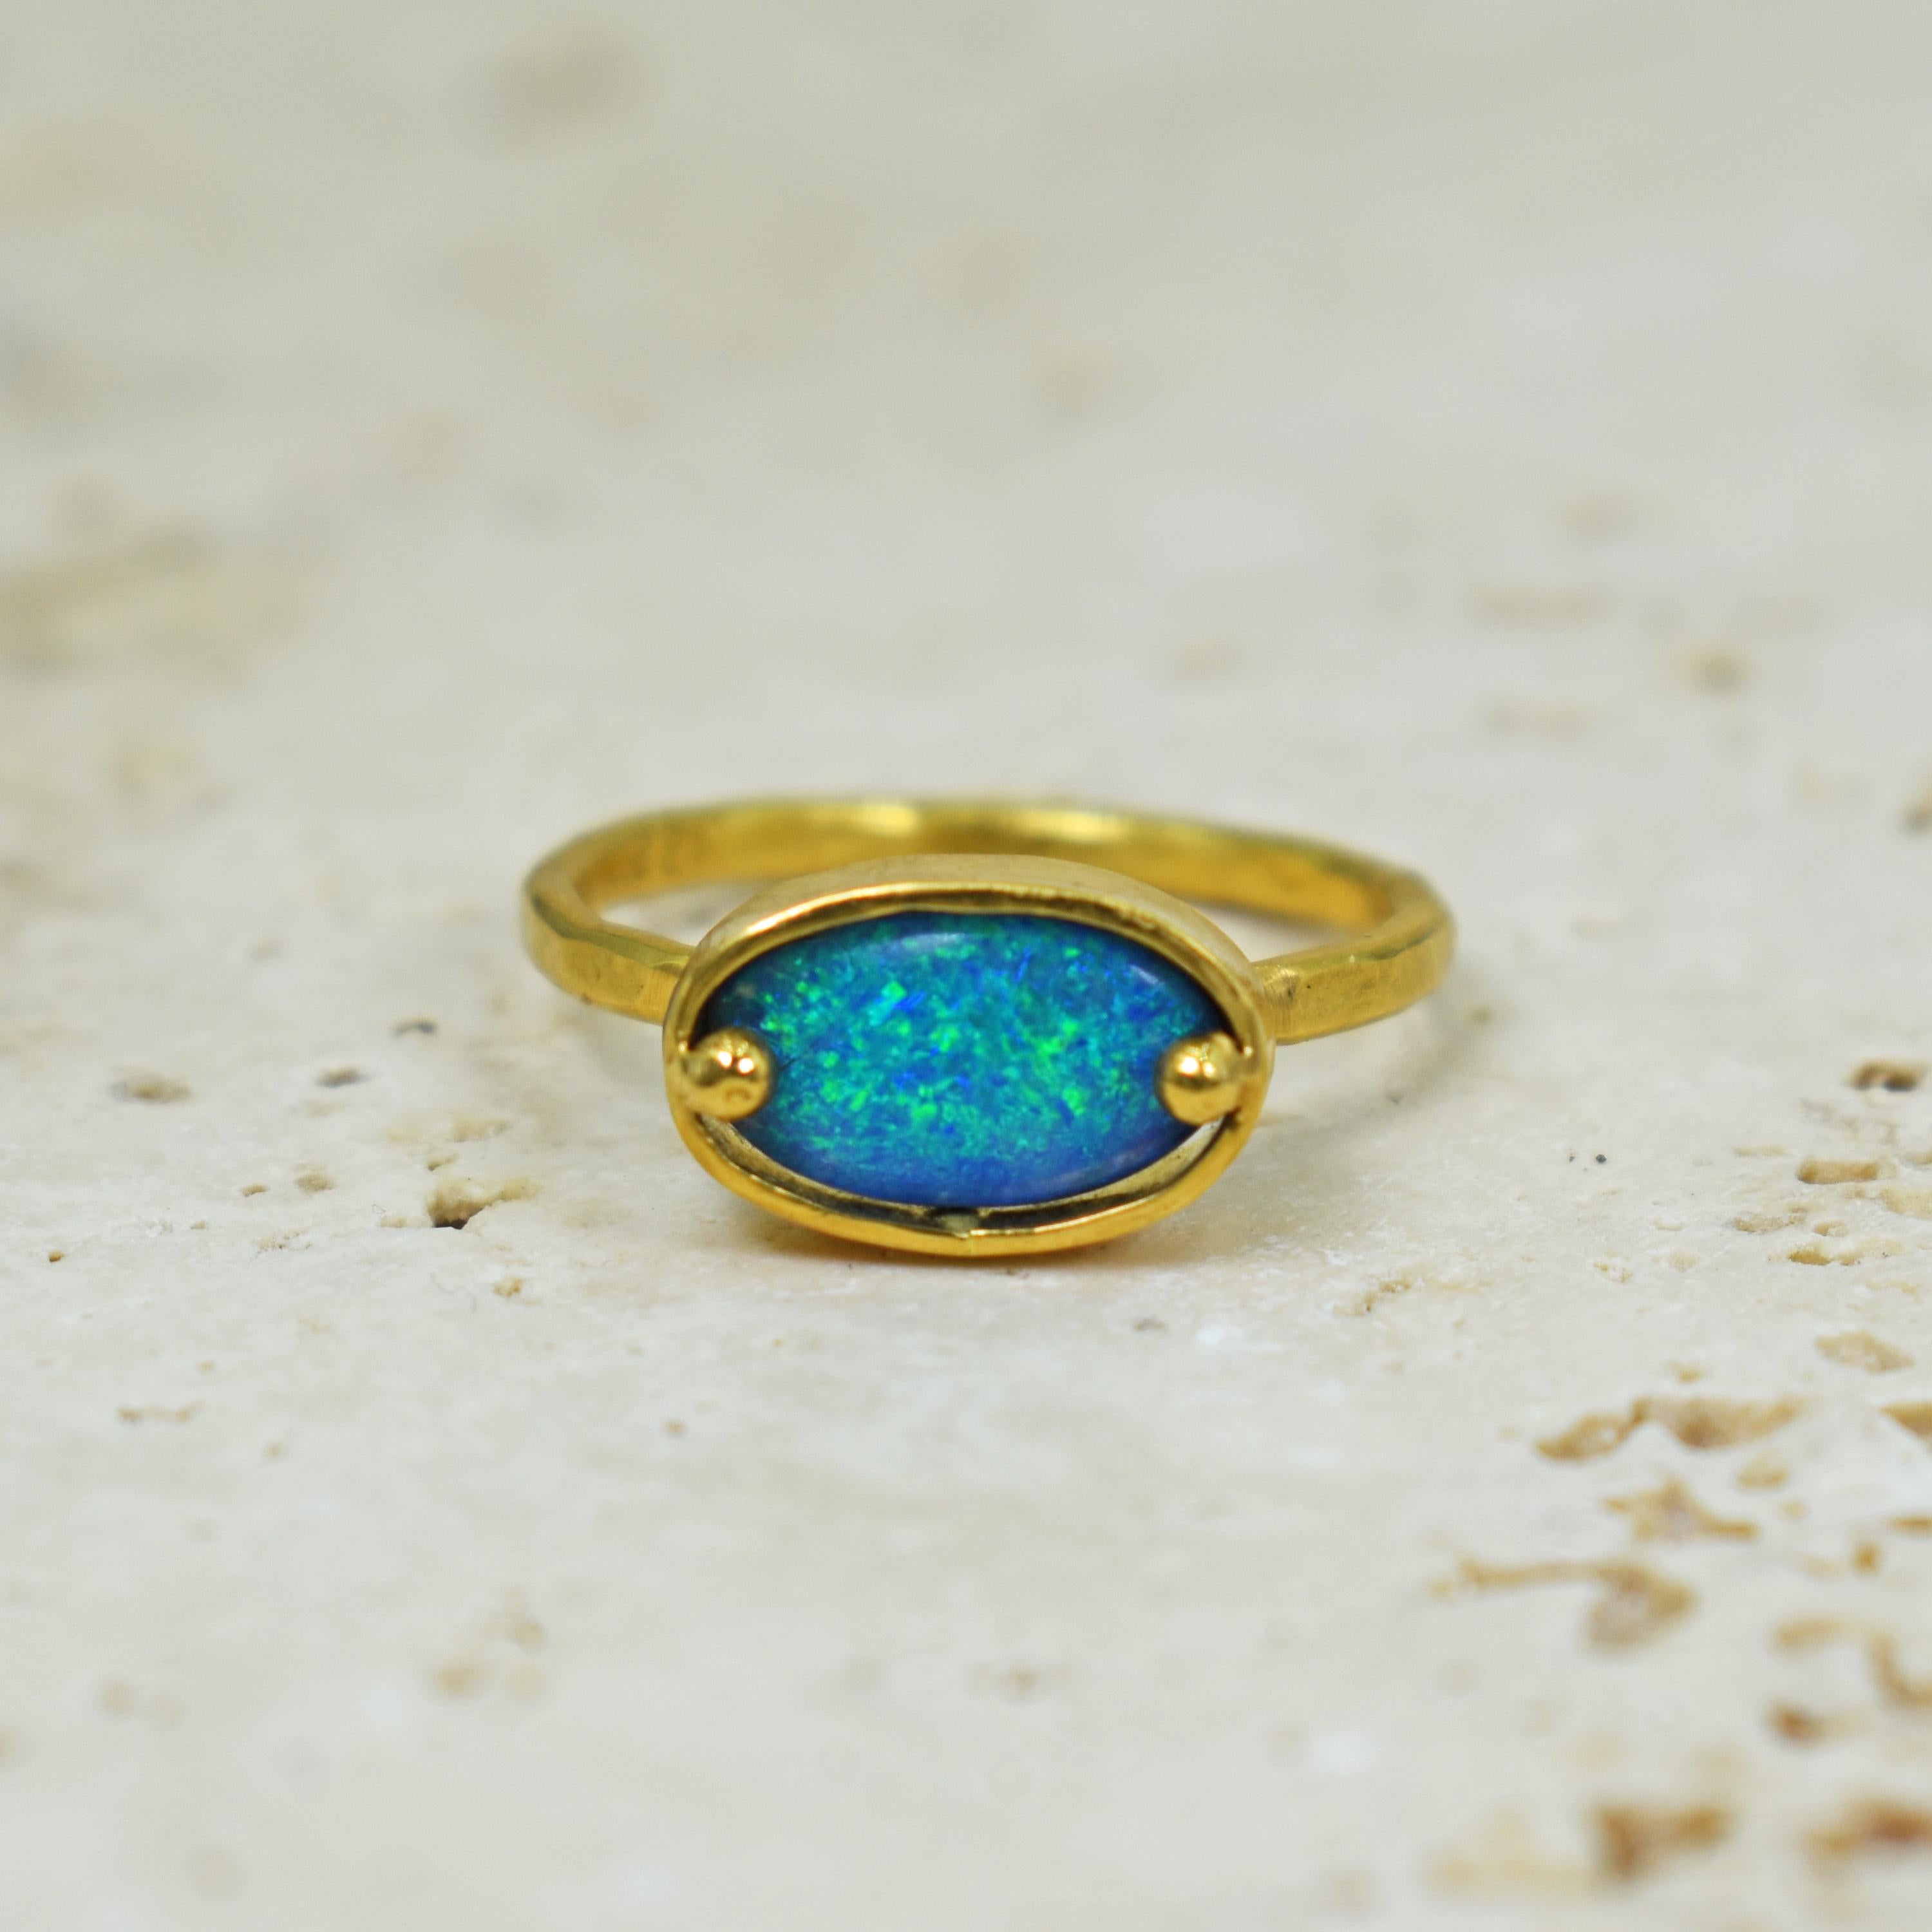 Blauer australischer Opal, 1,16 Karat, eingefasst in eine strukturierte, handgeschmiedete 22-karätige Gelbgoldlünette und einen Solitärring mit Akzentzacken. Dieser atemberaubende grüne Flash-Opal, gepaart mit gehämmertem, hochkarätigem Gold,